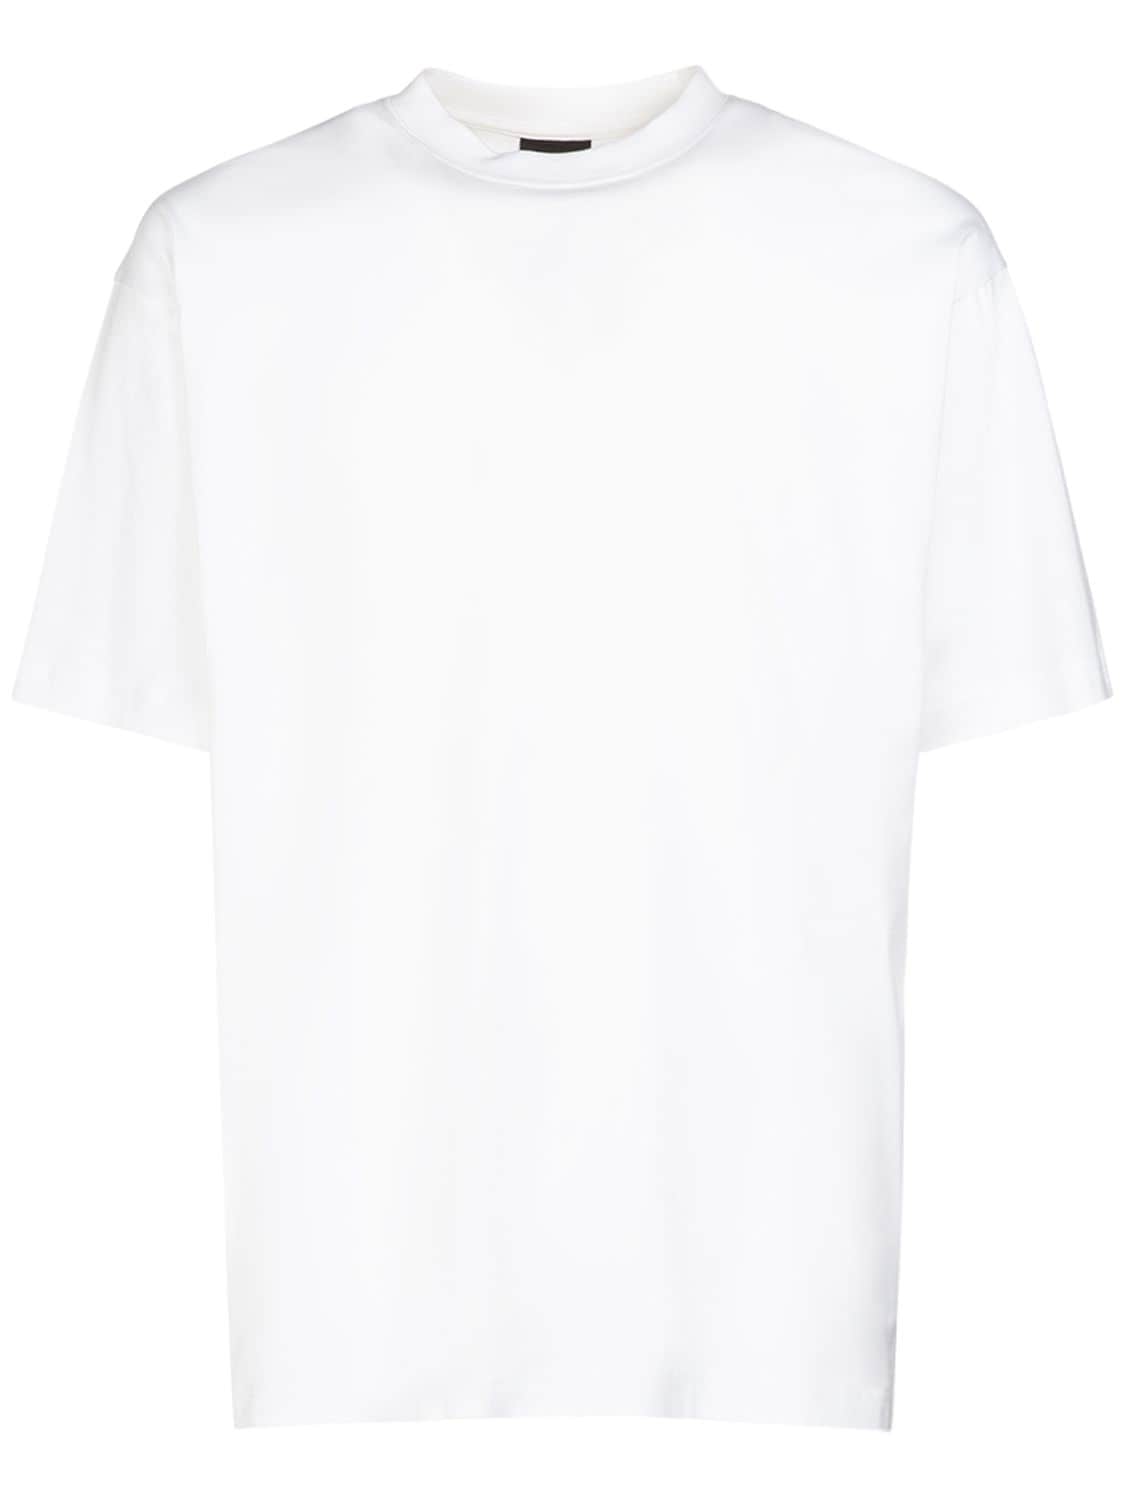 BALENCIAGA Cotton T-shirt